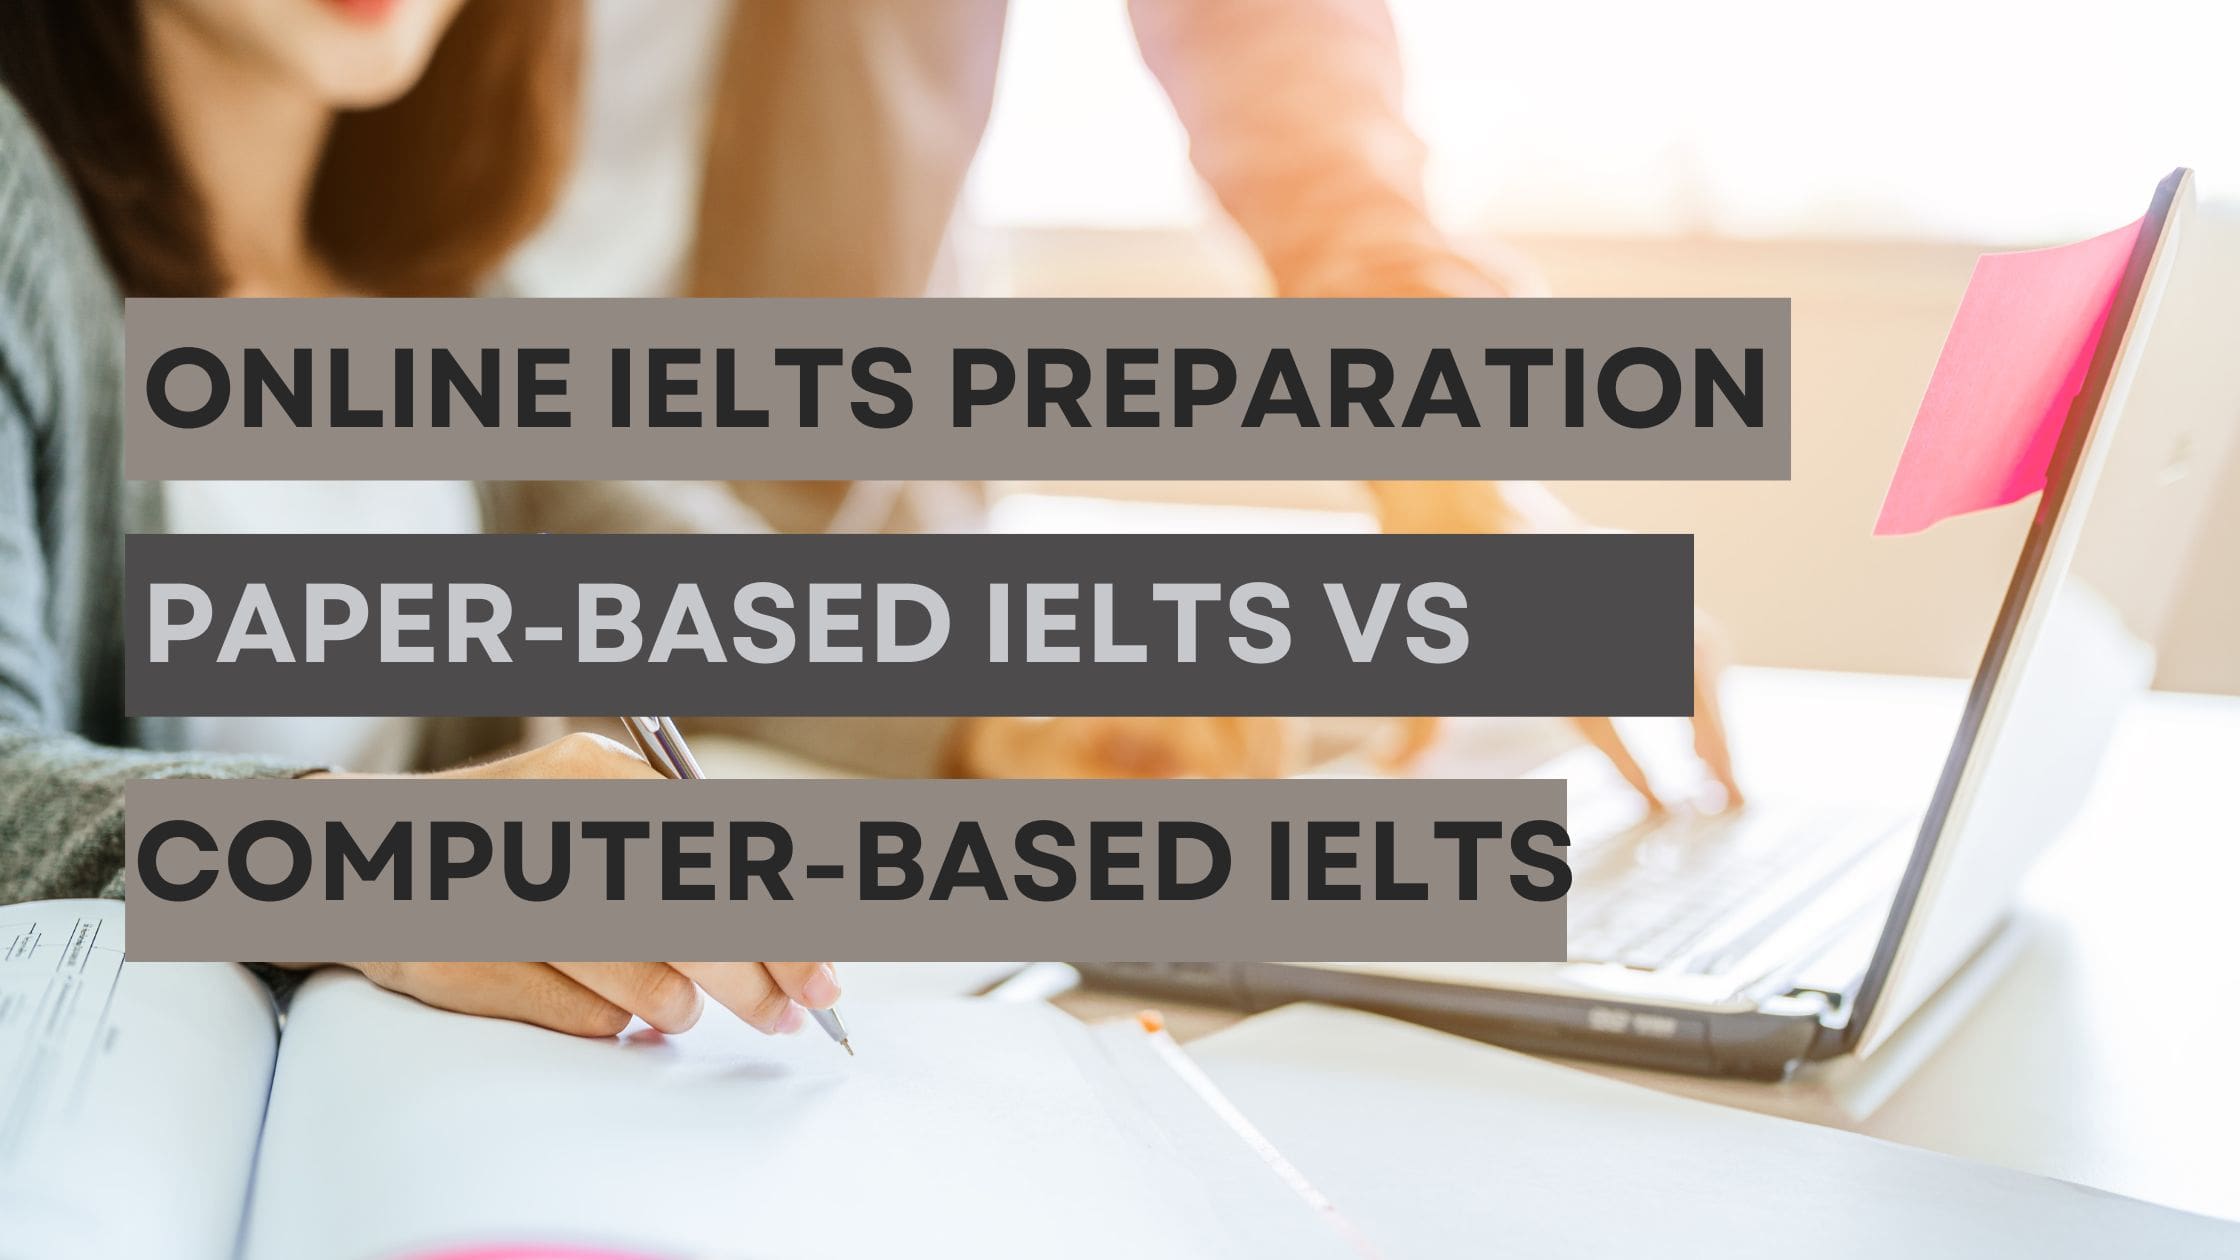 Computer based IELTS VS Paper based IELTs